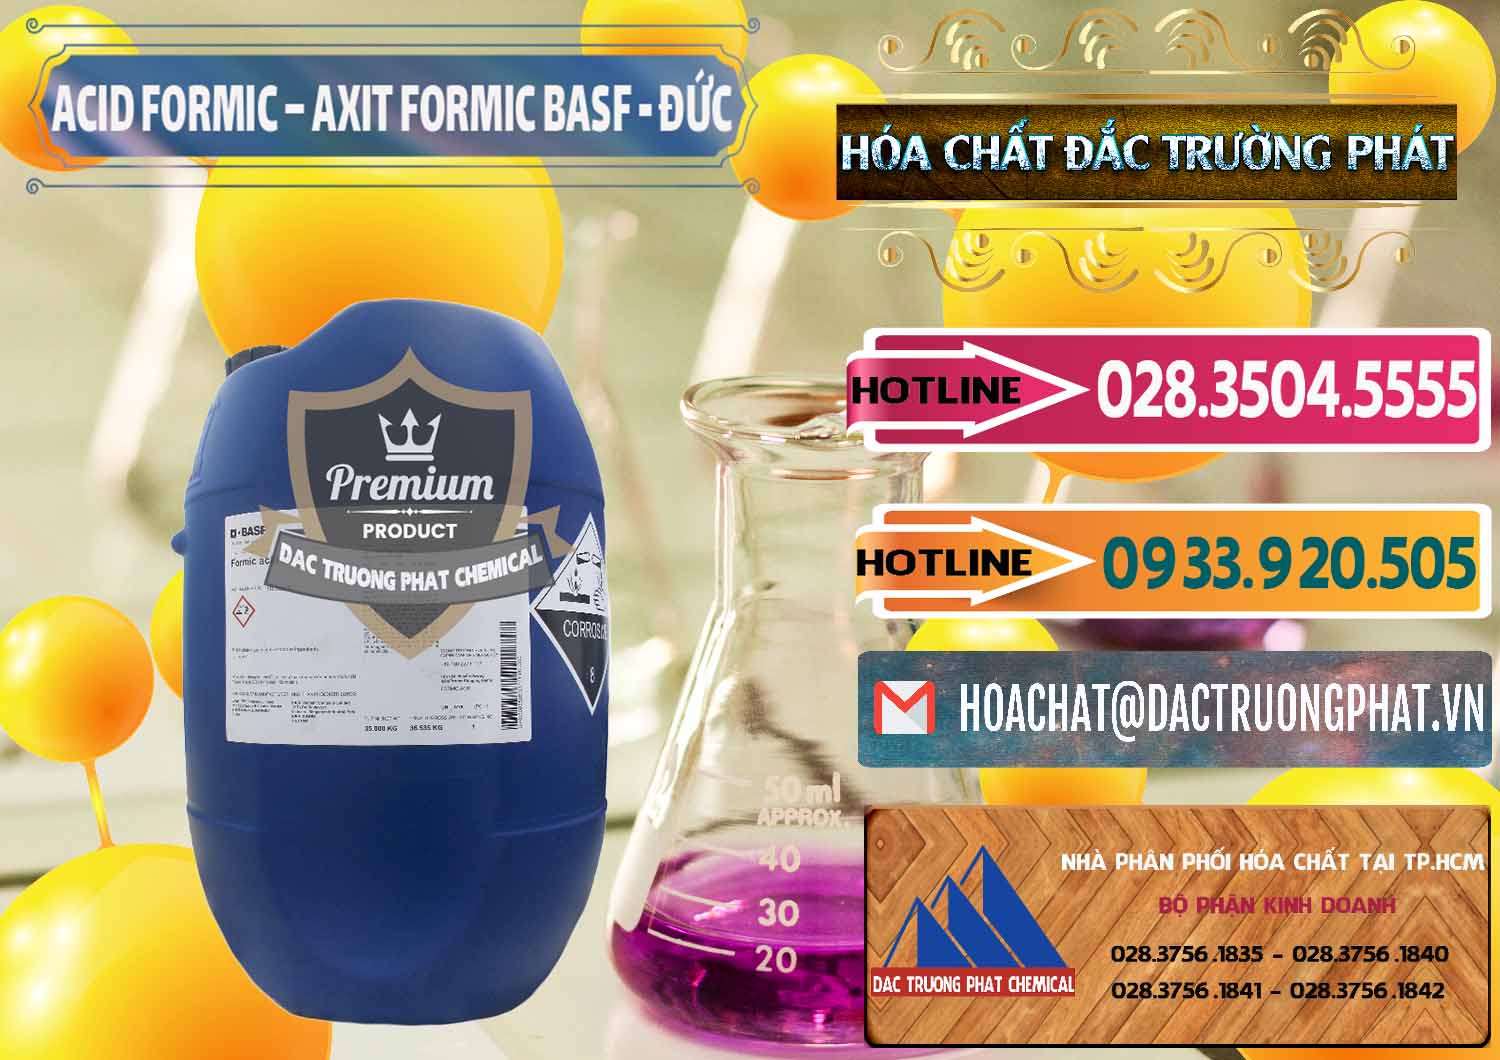 Cty chuyên nhập khẩu _ bán Acid Formic - Axit Formic BASF Đức Germany - 0028 - Chuyên nhập khẩu _ cung cấp hóa chất tại TP.HCM - dactruongphat.vn